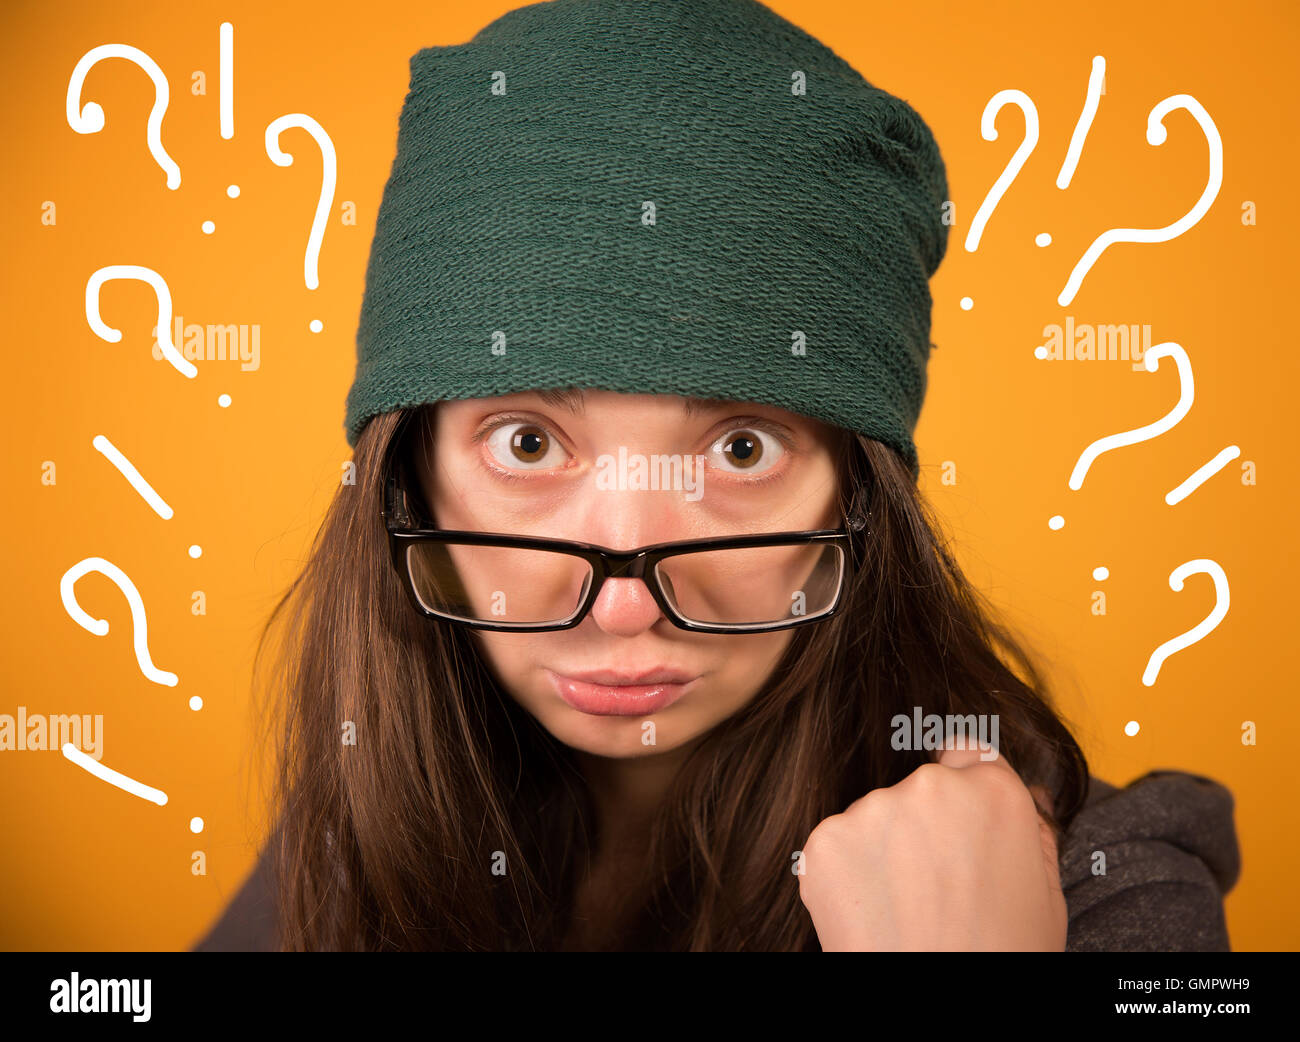 Das Mädchen mit Brille und Hut auf einem gelben Hintergrund Stockfoto